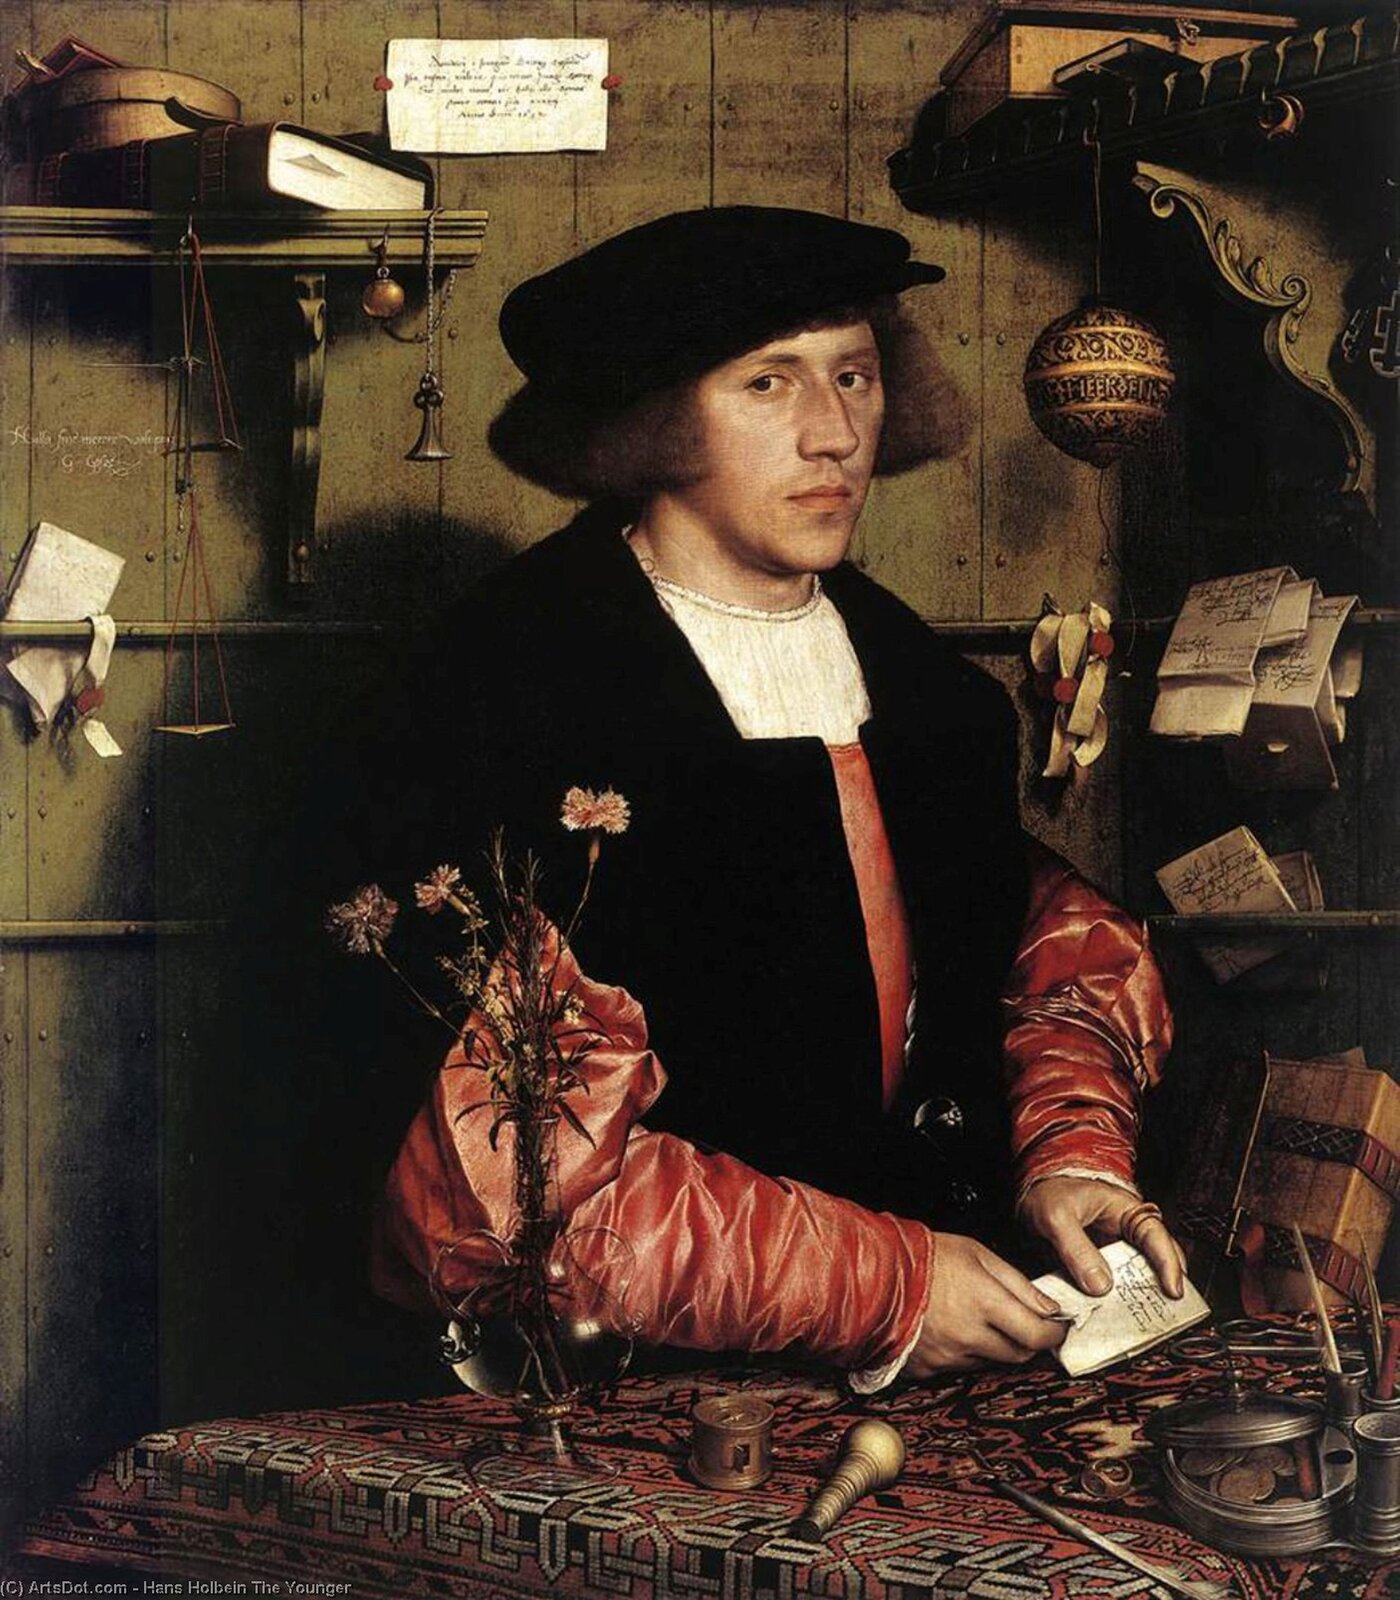 Ilustracja o kształcie pionowego prostokąta  przedstawia obraz Hansa Holbeina Młodszego. „Portret Georga Gisze”. Ukazuje młodego mężczyznę we wnętrzu. Ubrany w kosztowny strój, m.in. czerwoną jedwabną koszulę i kapelusz z czarnego aksamitu; otoczony przedmiotami, w większości umieszczonymi na stojącym przed nim stole, nakrytym wzorzystym obrusem. (nożyczki, pierścień i puszka z monetami). Na stole stoi wazonik z przezroczystego szkła weneckiego, z: goździkami, rozmarynem, hyzopem, krwawnikiem. Gisze skierowany jest w lewą stronę, ale jego wzrok bezpośrednio patrzy na widza. 